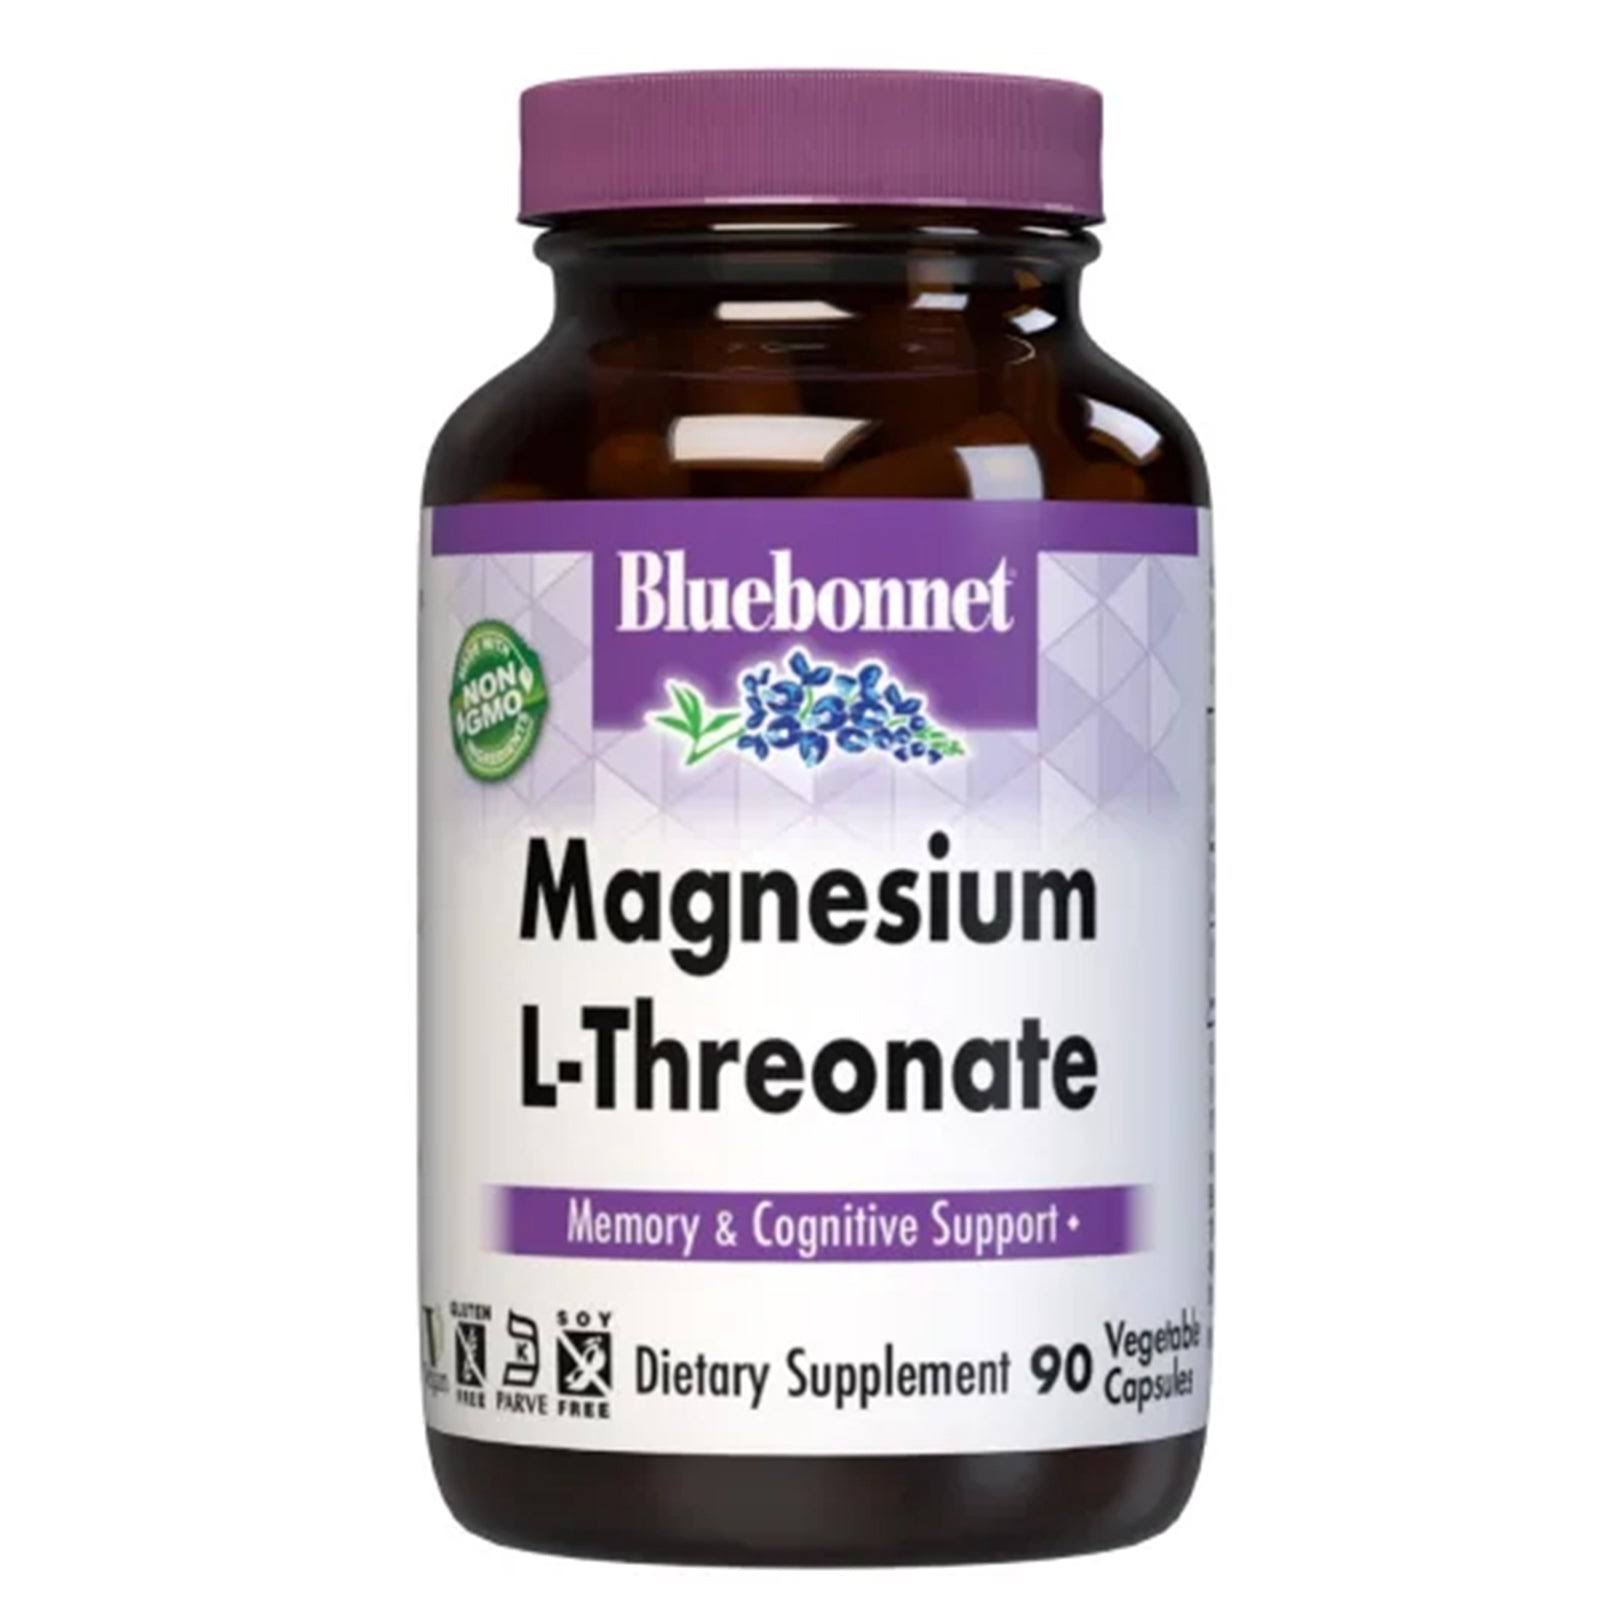 Bluebonnet Magnesium L-Threonate - 90 Vegetable Capsules